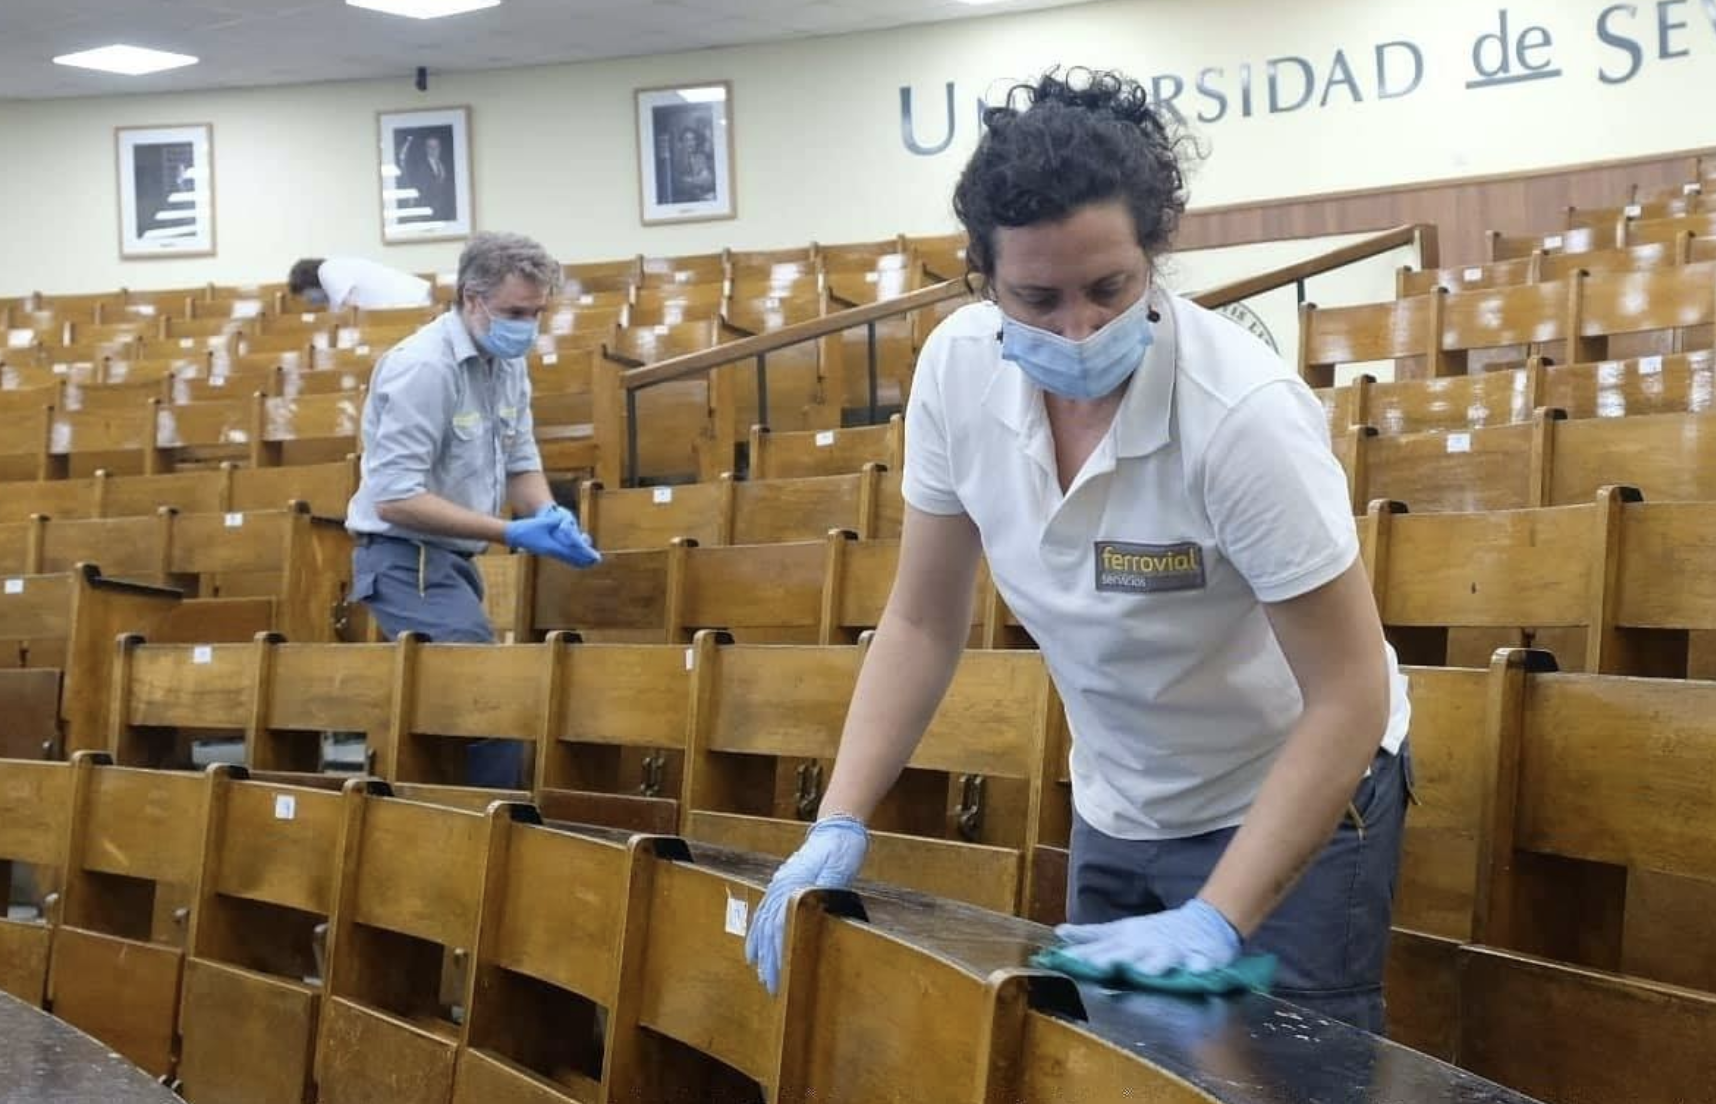 Desinfección en un aula de la Universidad de Sevilla, en una imagen de archivo.